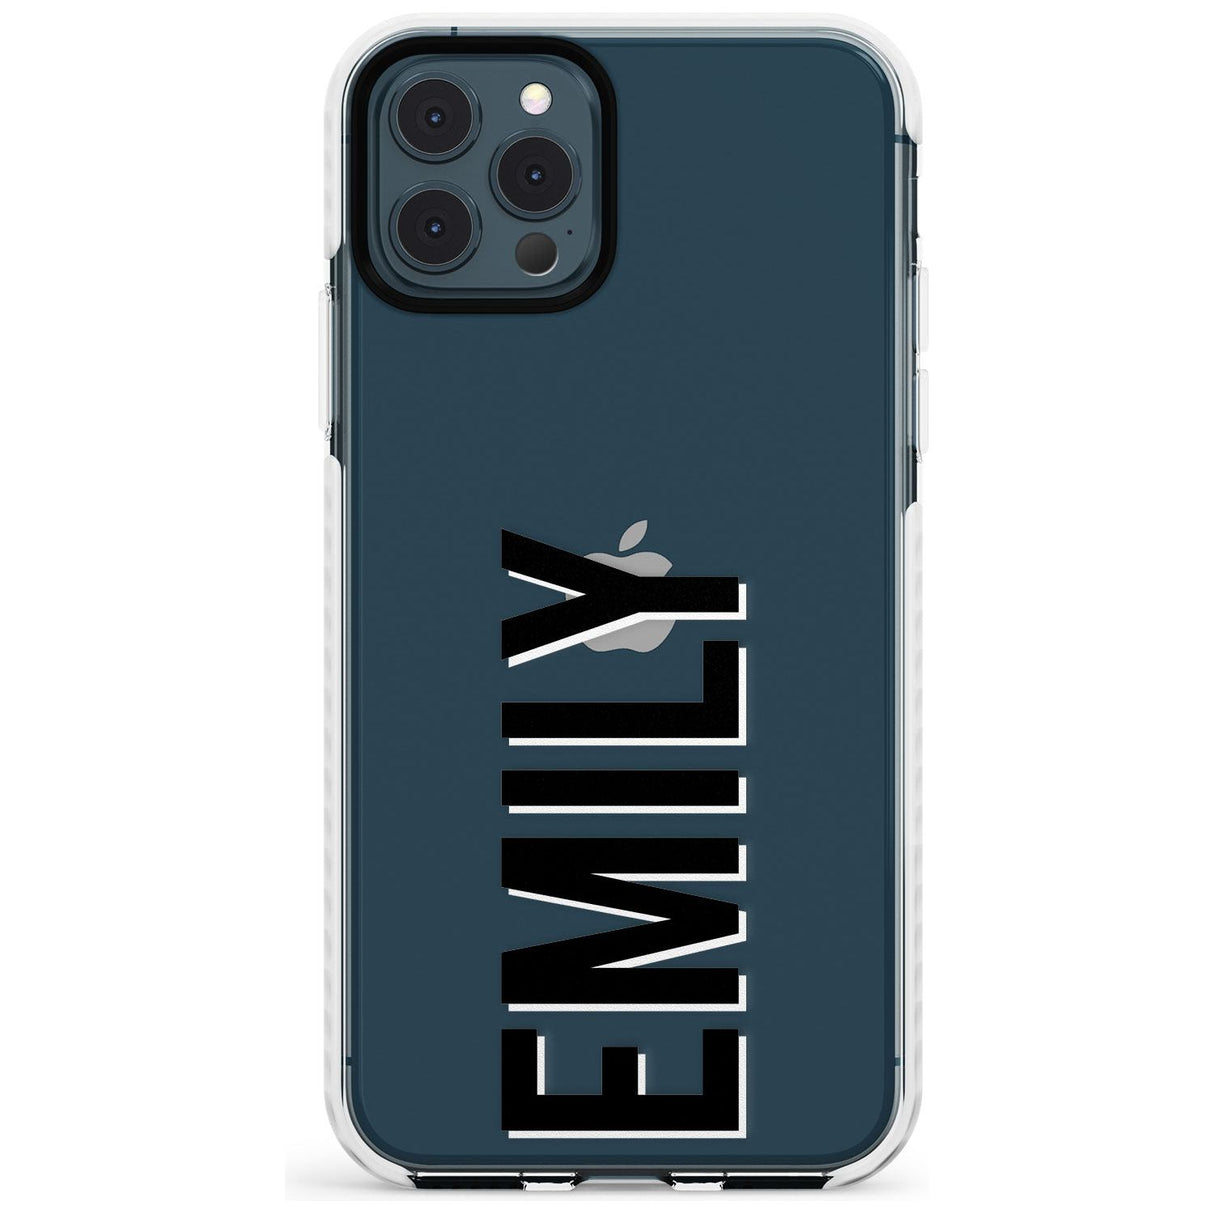 Custom Iphone Case 3A Slim TPU Phone Case for iPhone 11 Pro Max